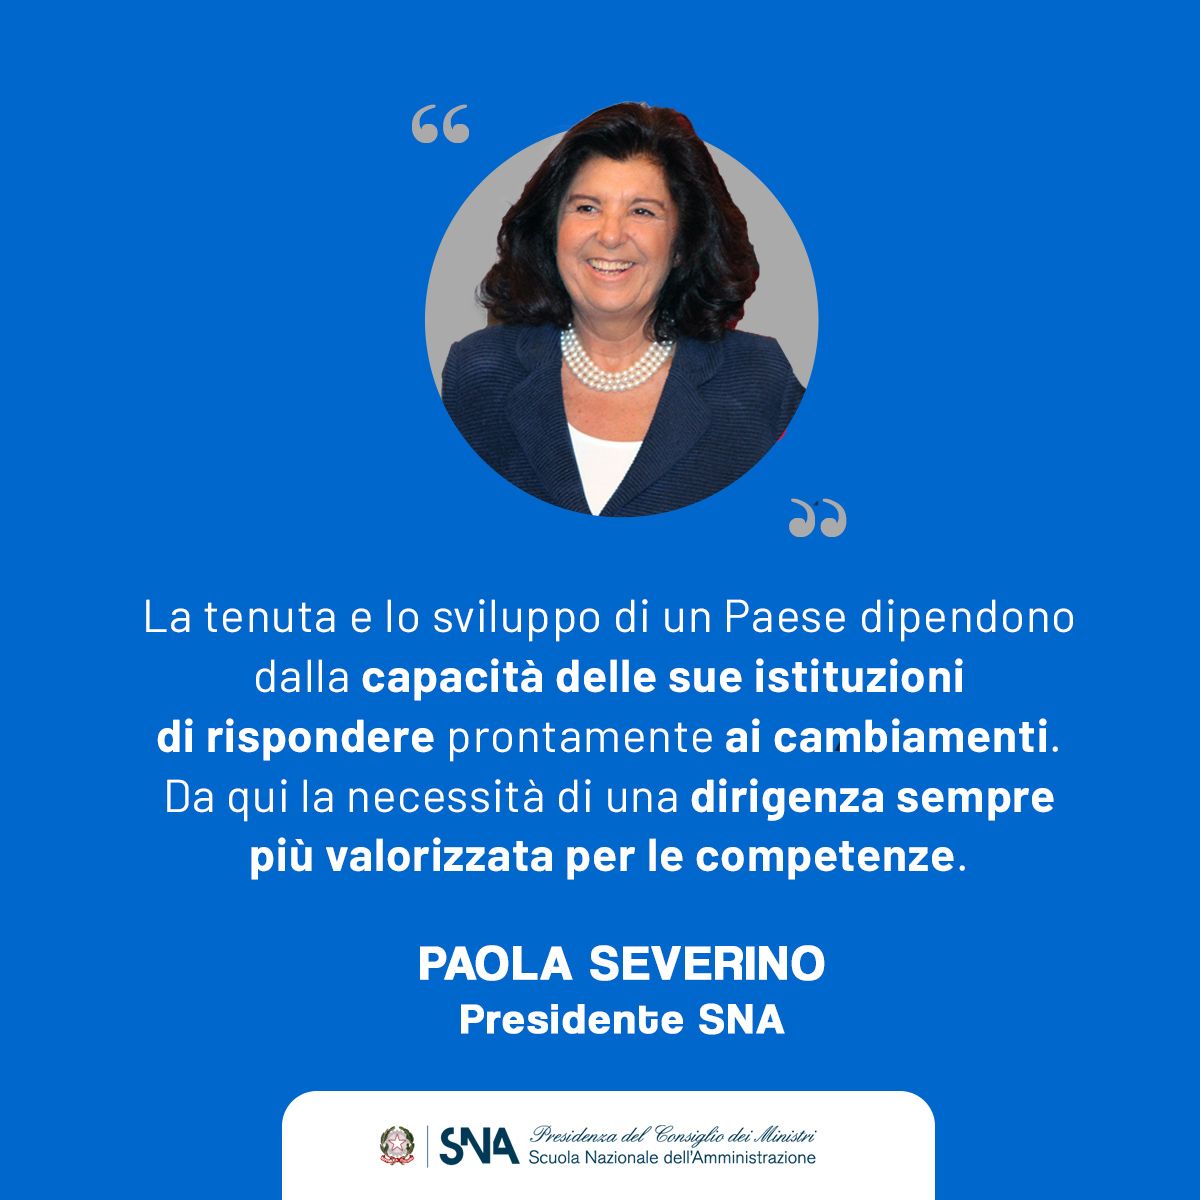 Paola Severino all’Olivetti Leadership Institute per la formazione della nuova dirigenza della P.A. Competenze e leadership per una nuova Pubblica Amministrazione